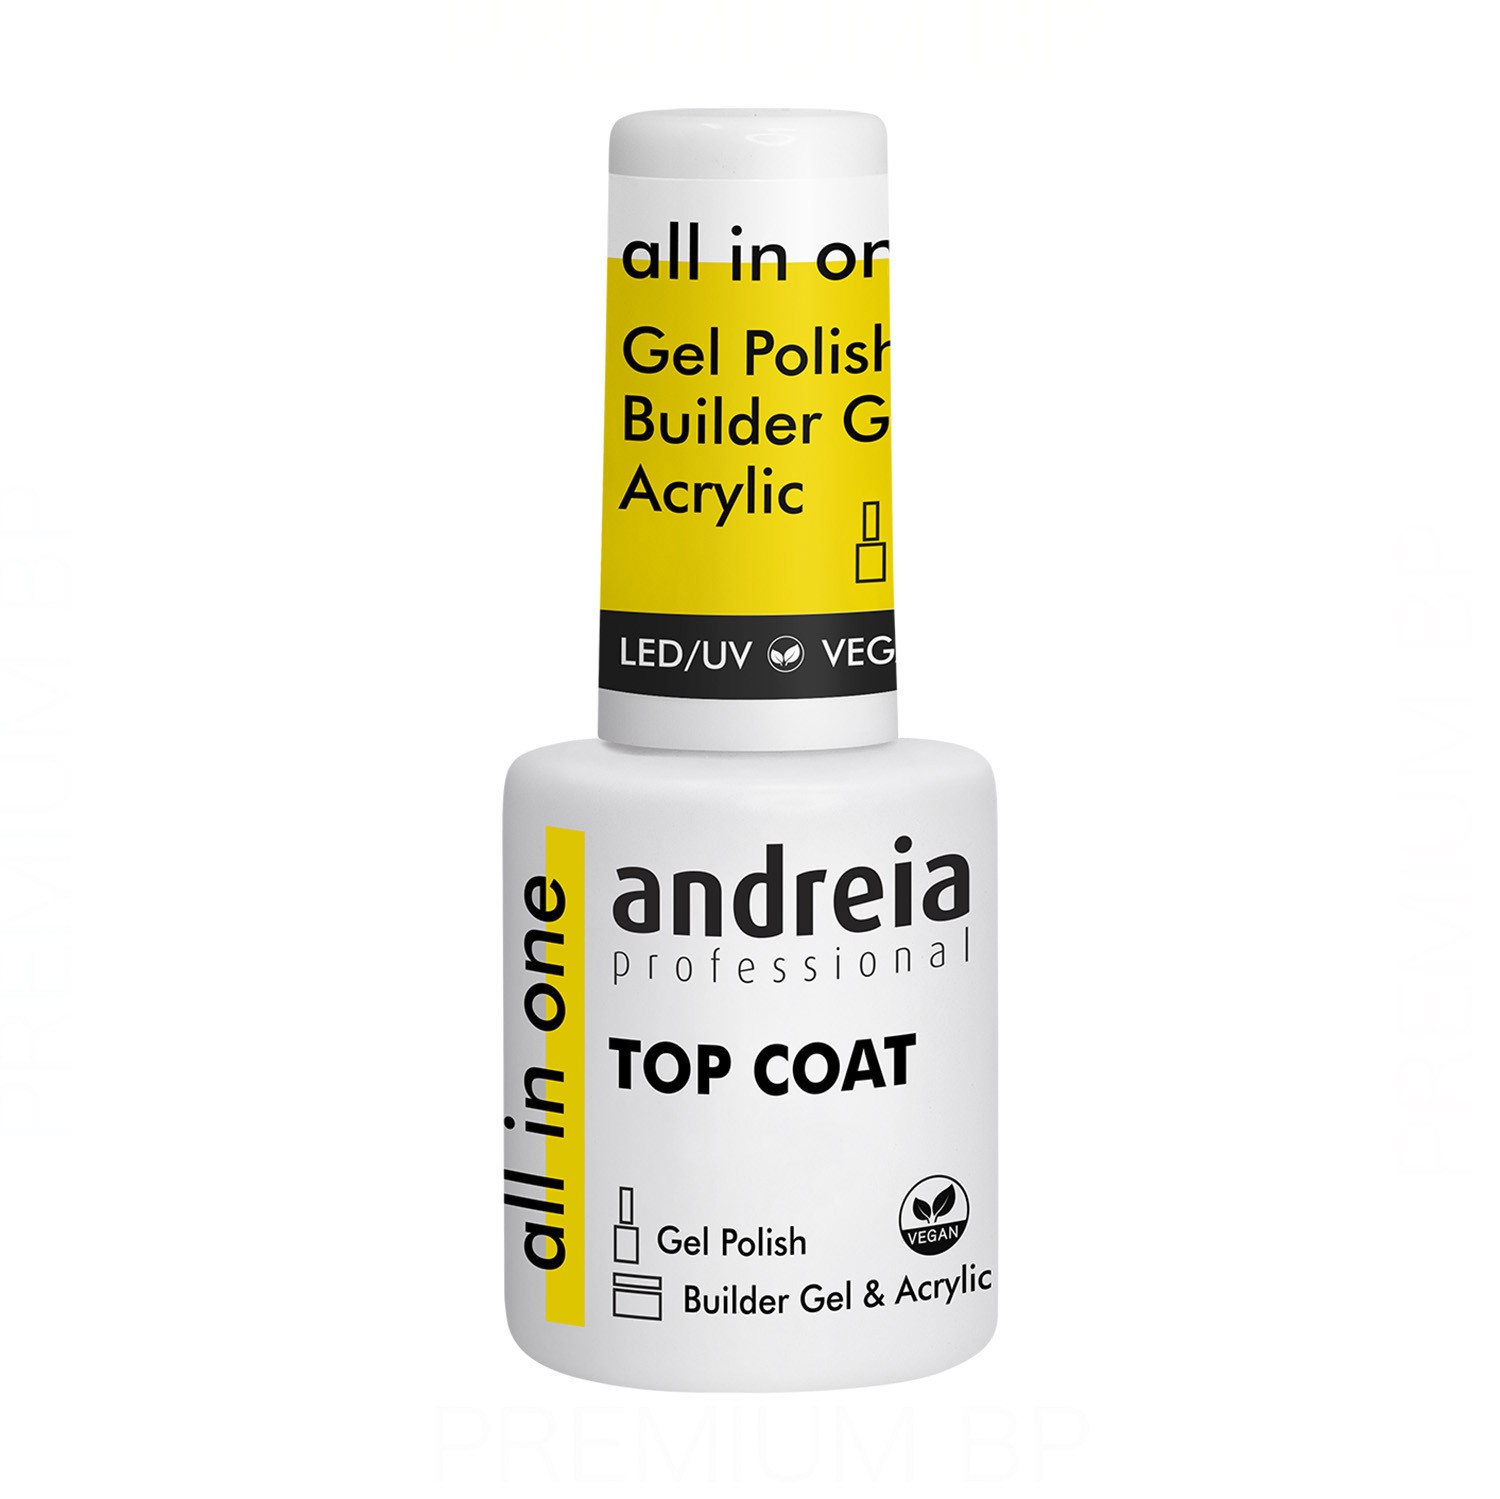 Andreia - Andreia professional all in one top coat 10,5 ml, top coat de alto brillo y elevada resistencia.